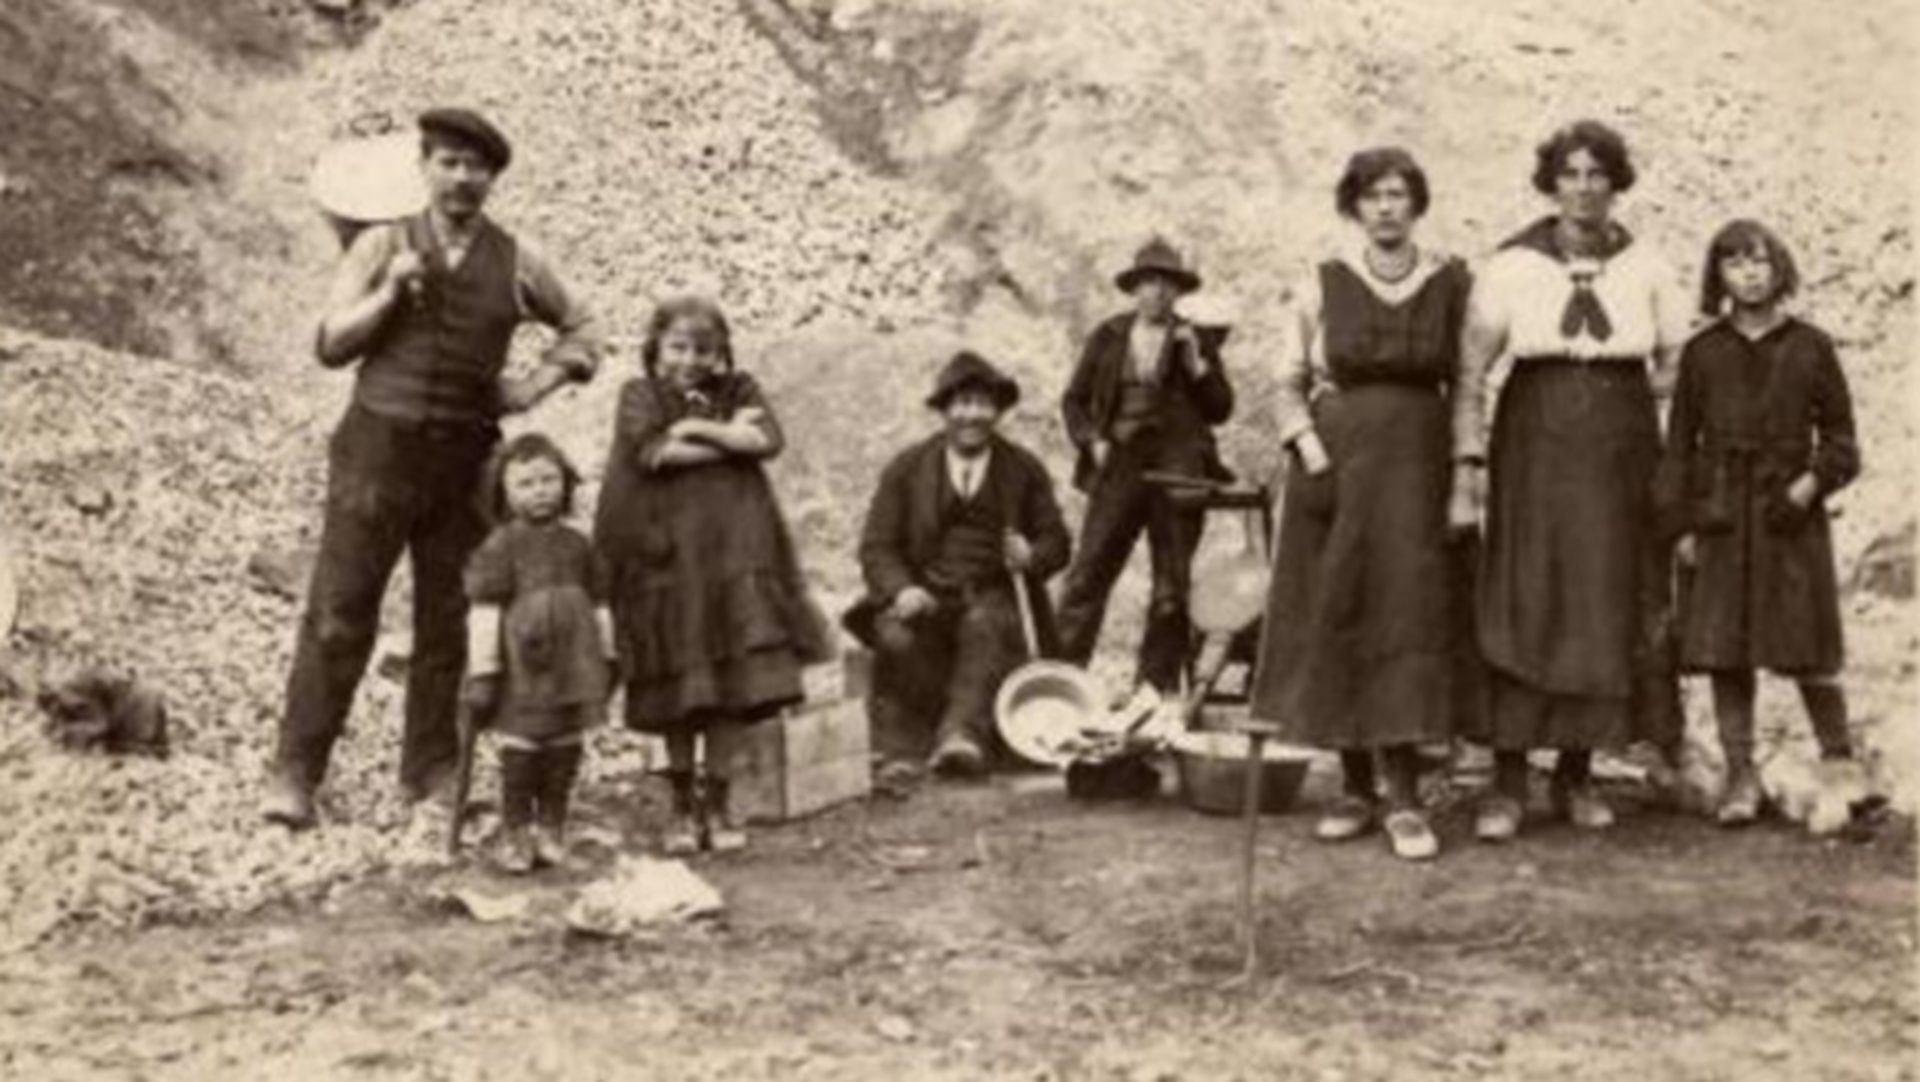 Une famille de rétameurs yéniches dans les Grisons, dans les années 1930 (photo: collection Ernest Spichiger / Cronica)